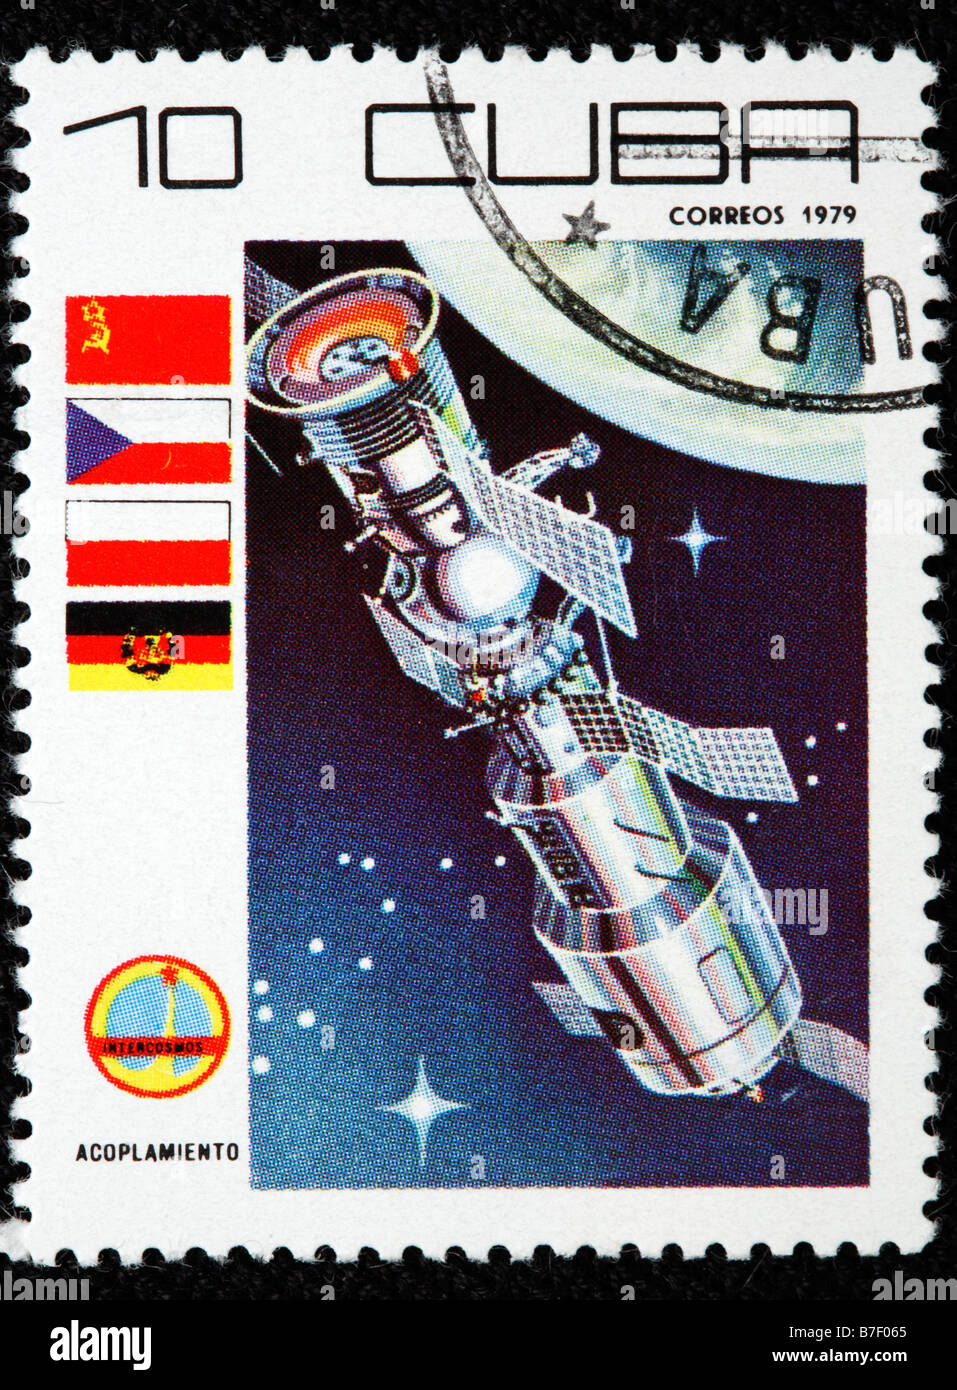 Sowjetische orbitale Raumstation, Briefmarke, Kuba, 1979 Stockfoto